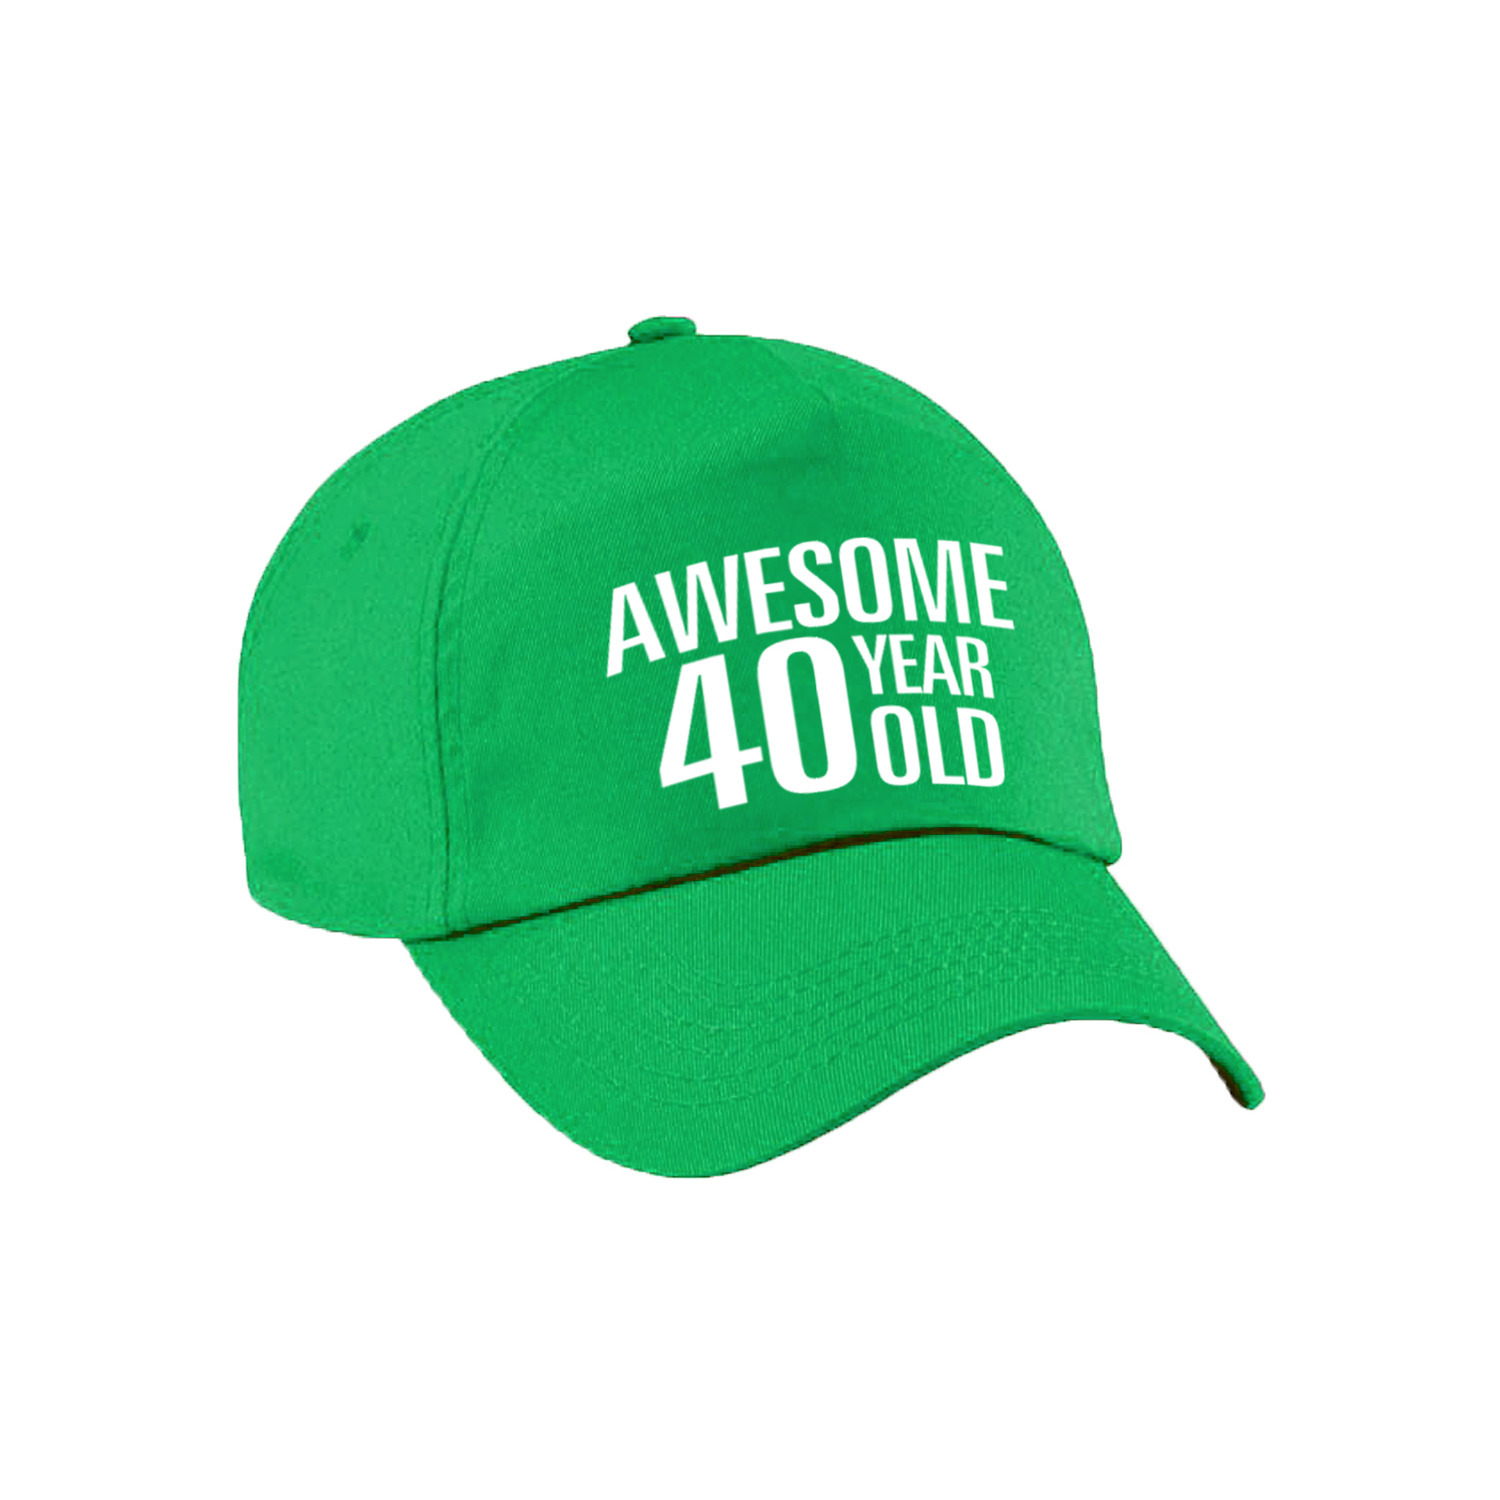 Awesome 40 year old verjaardag pet-cap groen voor dames en heren